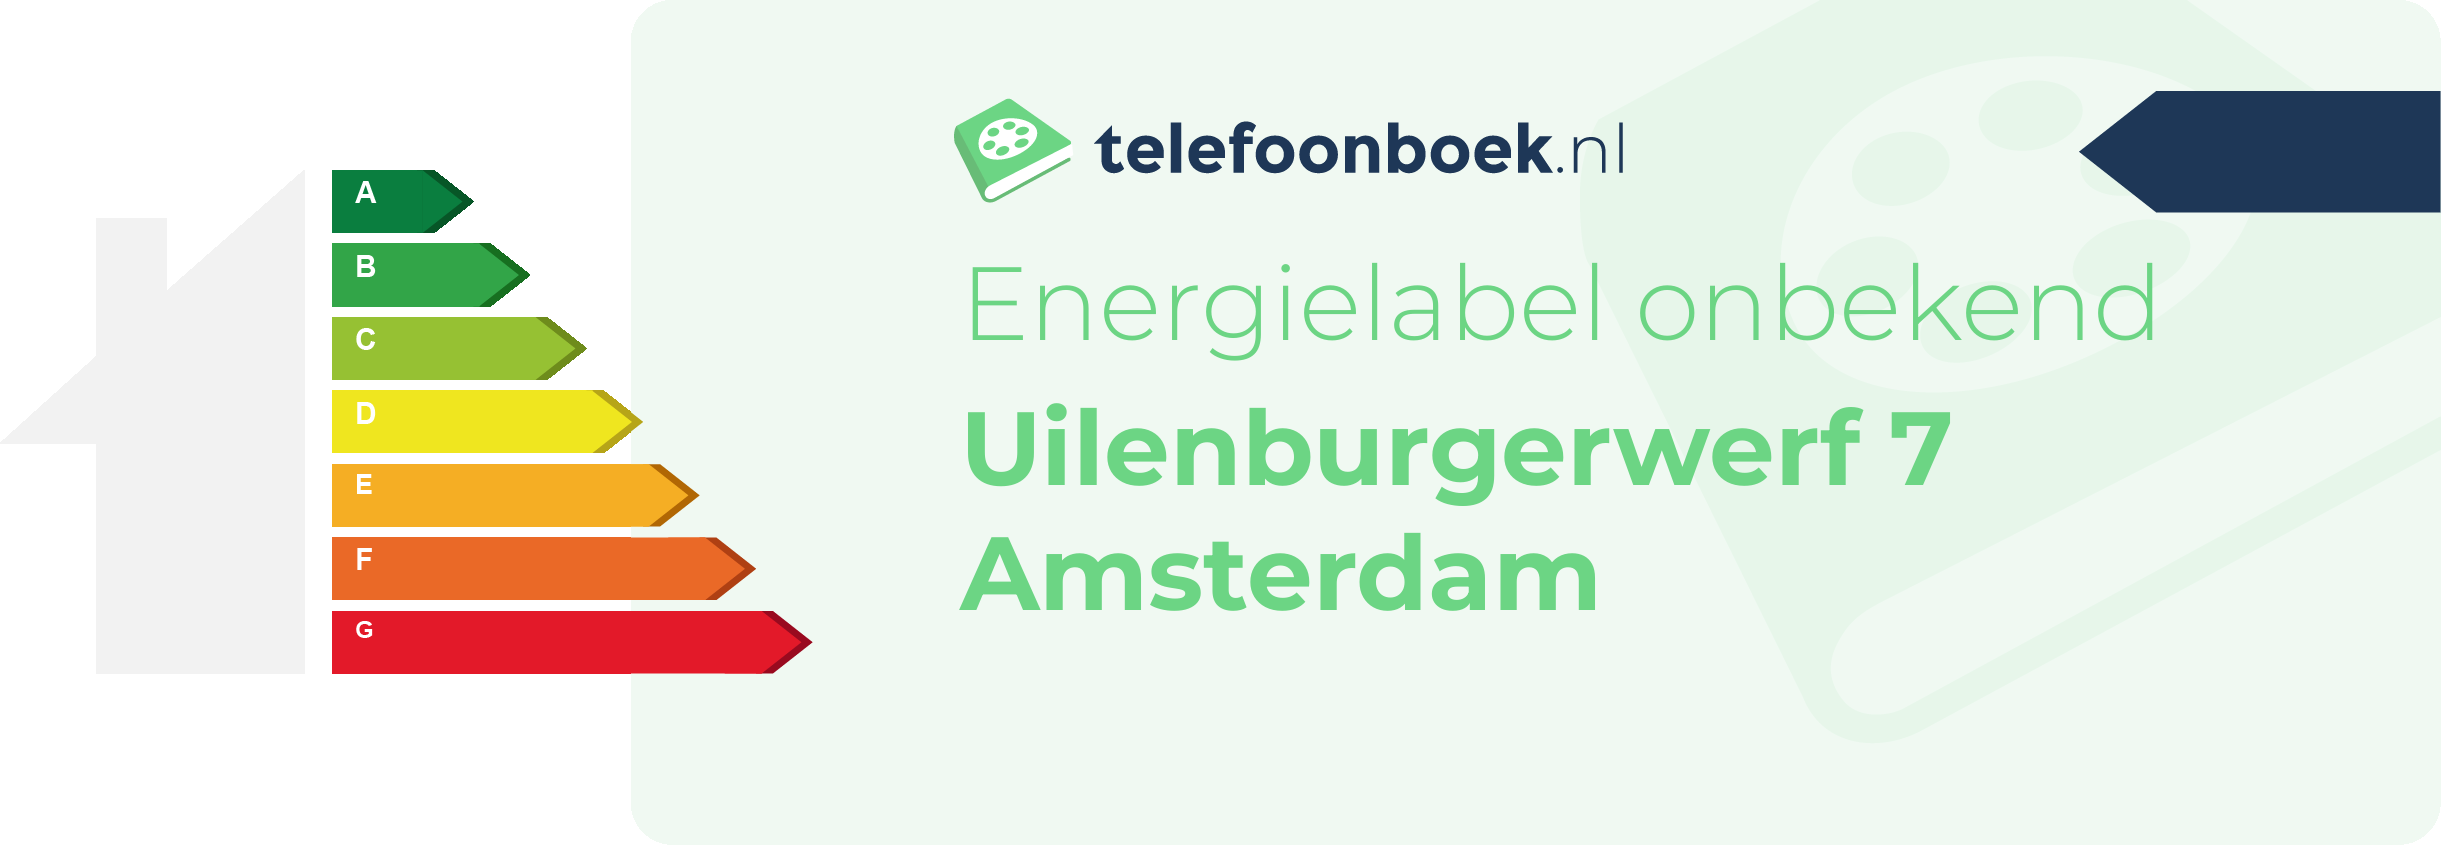 Energielabel Uilenburgerwerf 7 Amsterdam